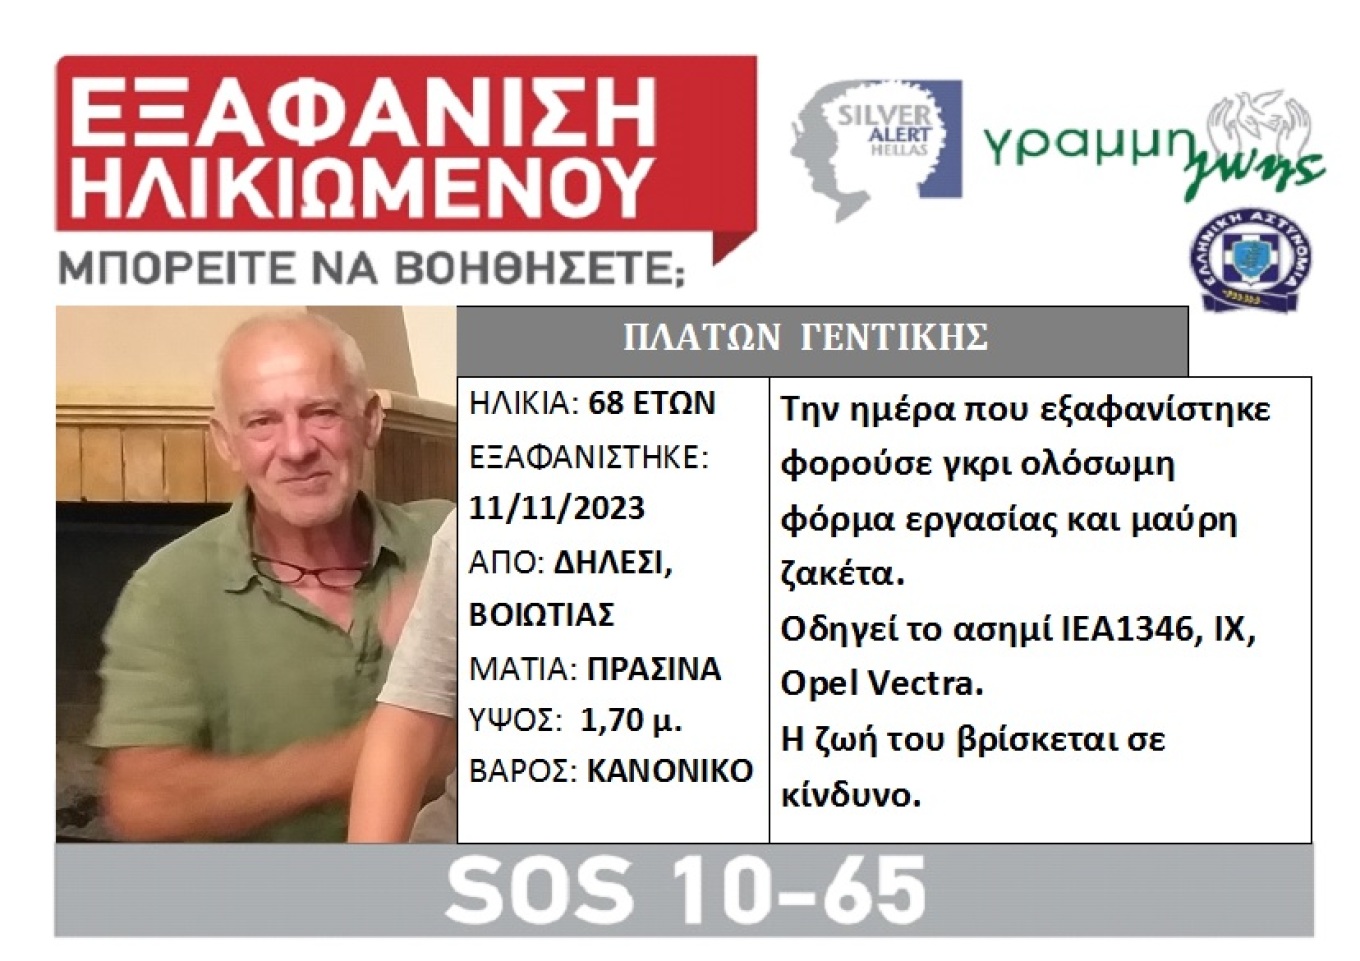 Βοιωτία: Εξαφανίστηκε το Σάββατο ο 68χρονος Πλάτων Γεντίκης